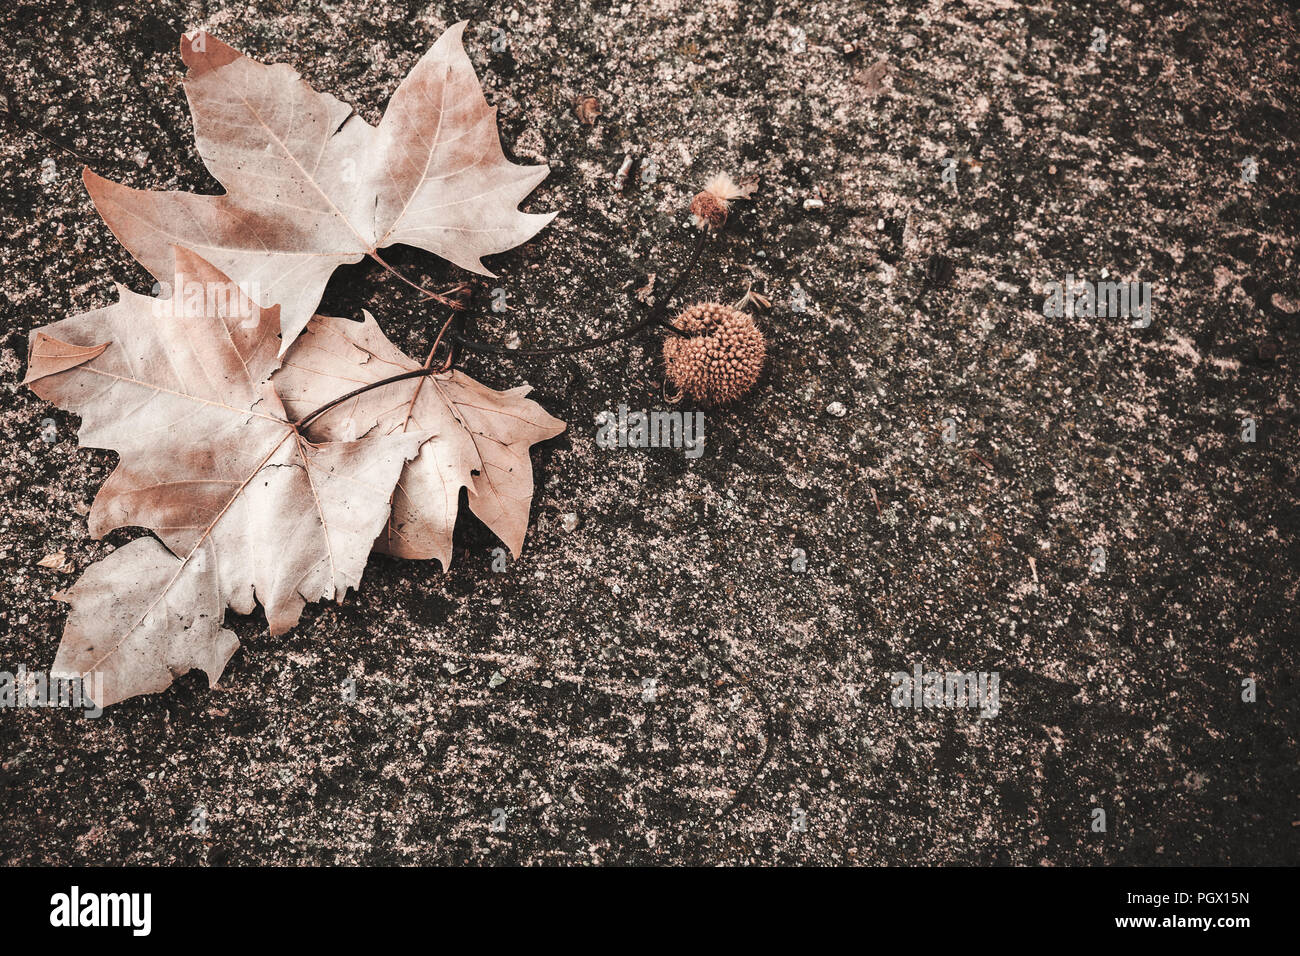 Plan Oriental feuilles et fruits jeter sur sol en pierre naturelle, sombre automne fond photo Banque D'Images